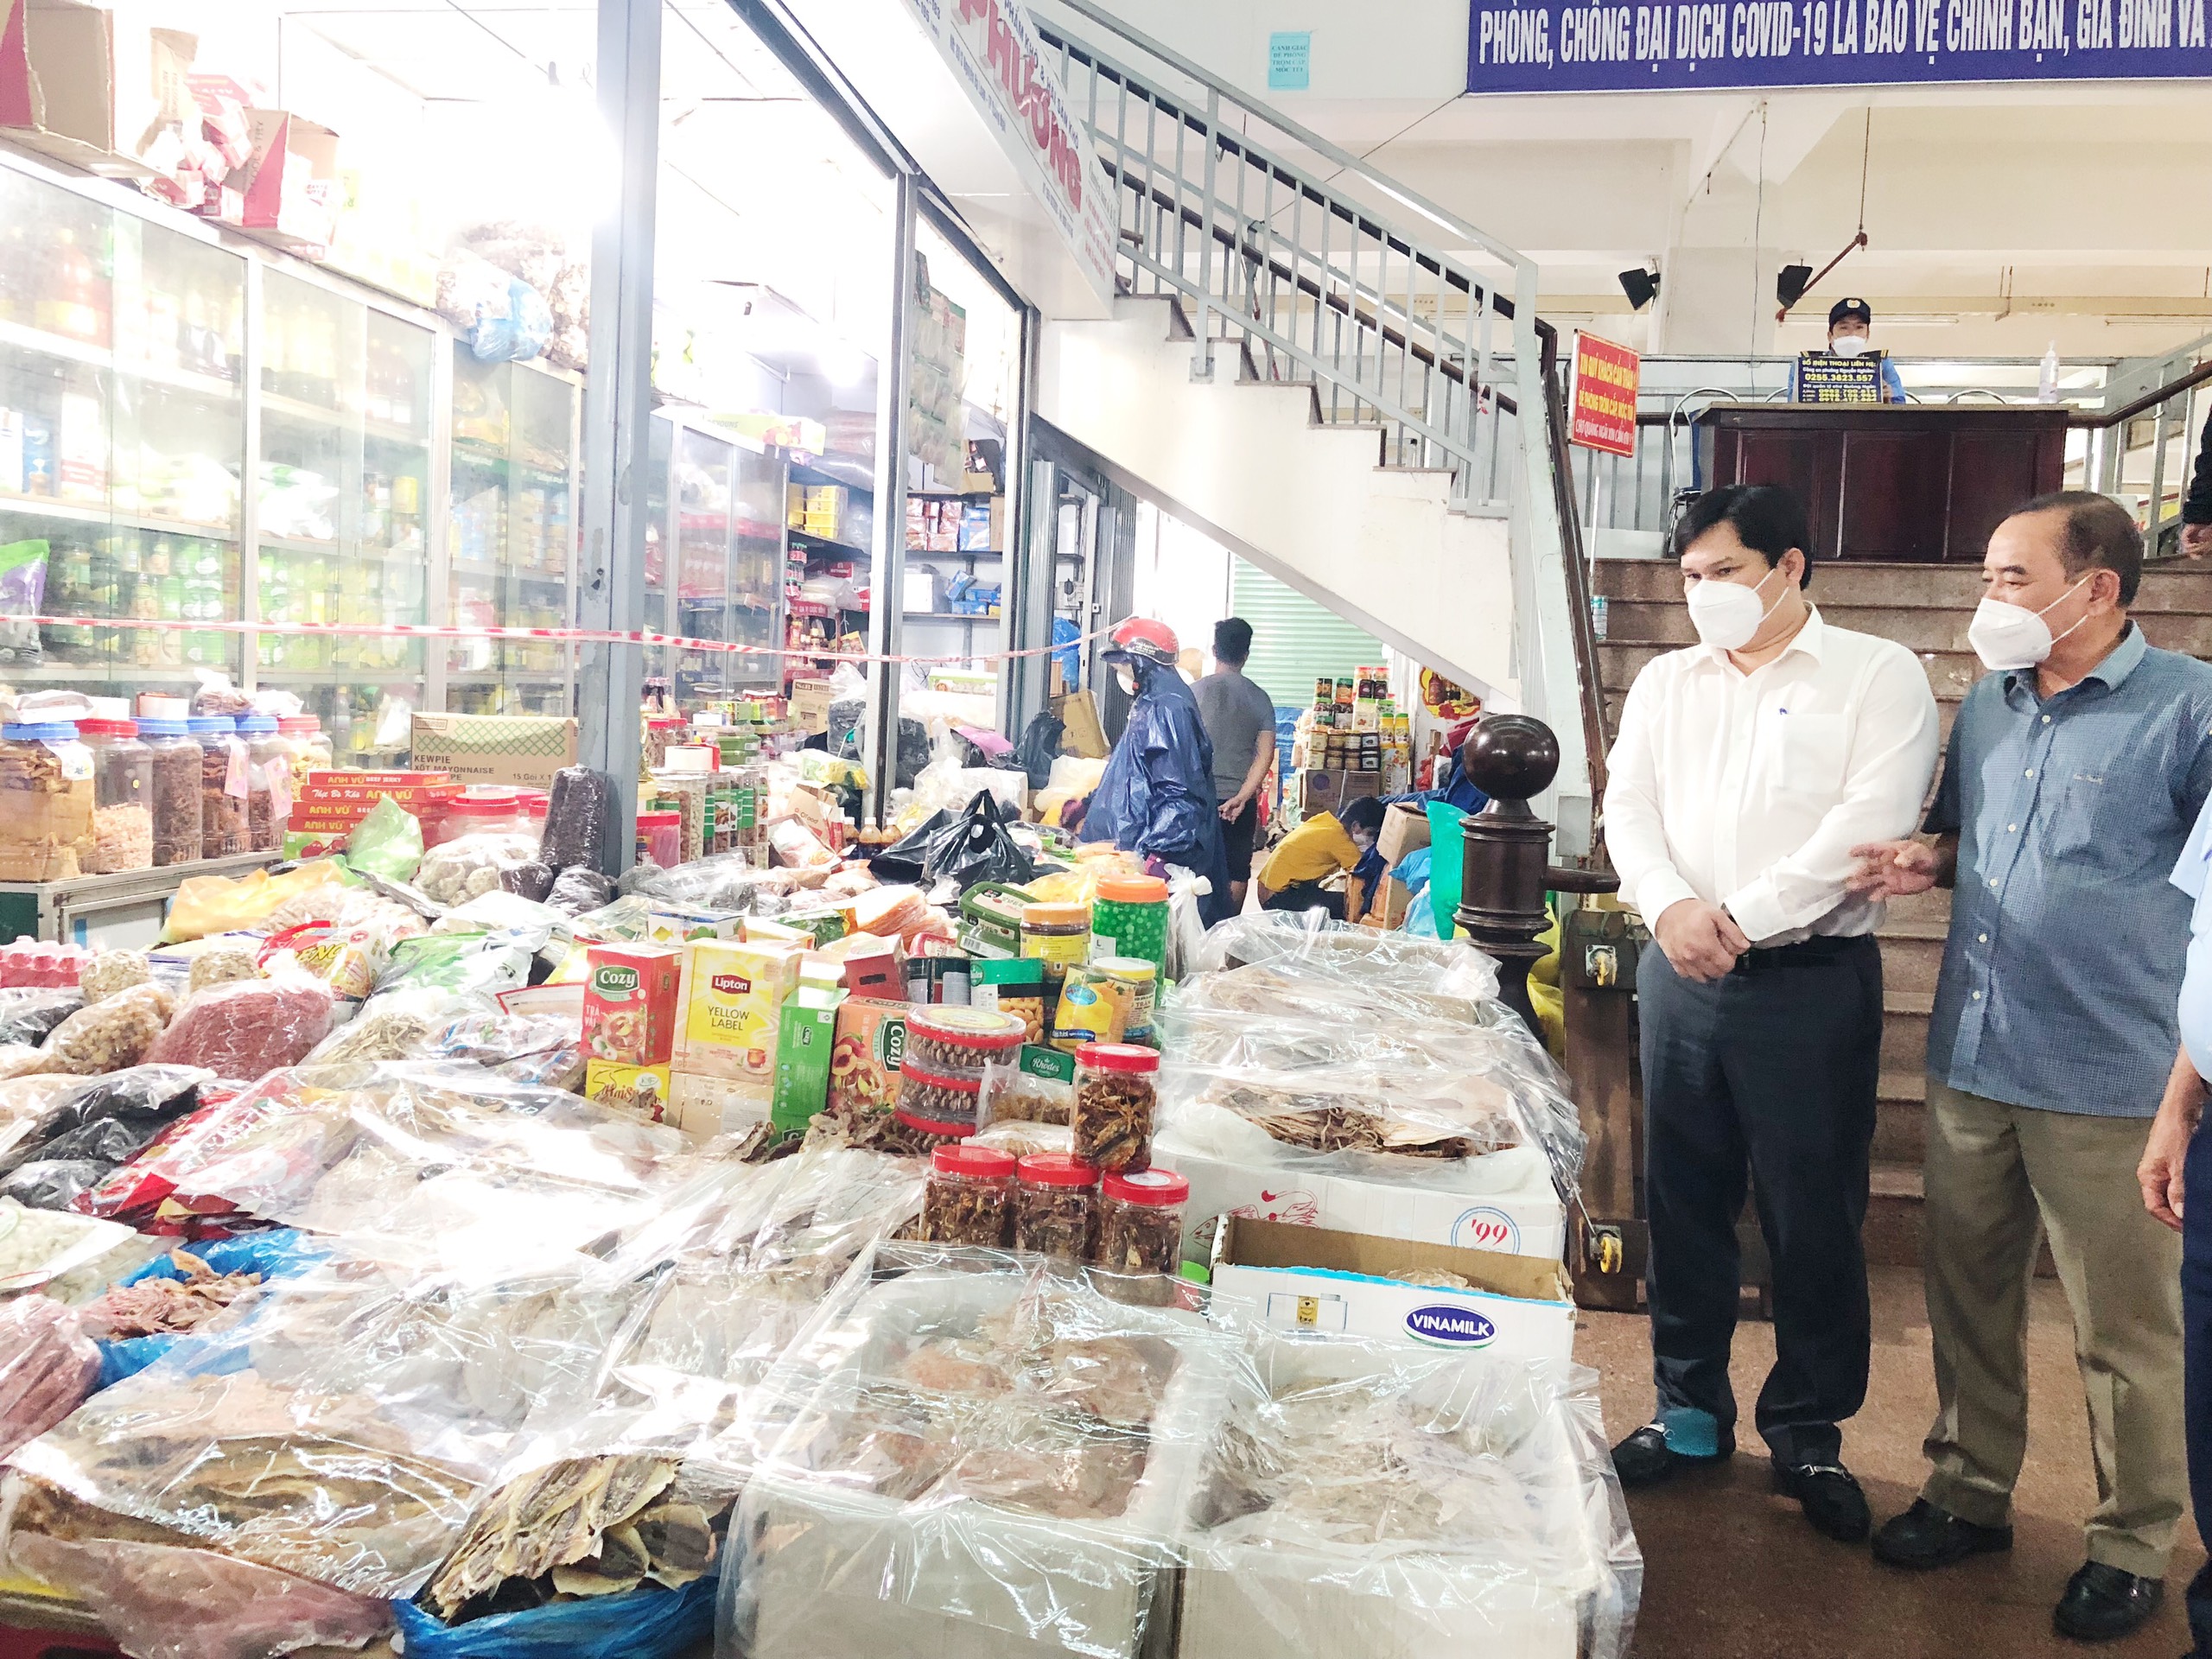 Hình 2. Ông Trần Phước Hiền - Phó Chủ tịch UBND tỉnh kiểm tra hàng hóa tại chợ Quảng Ngãi